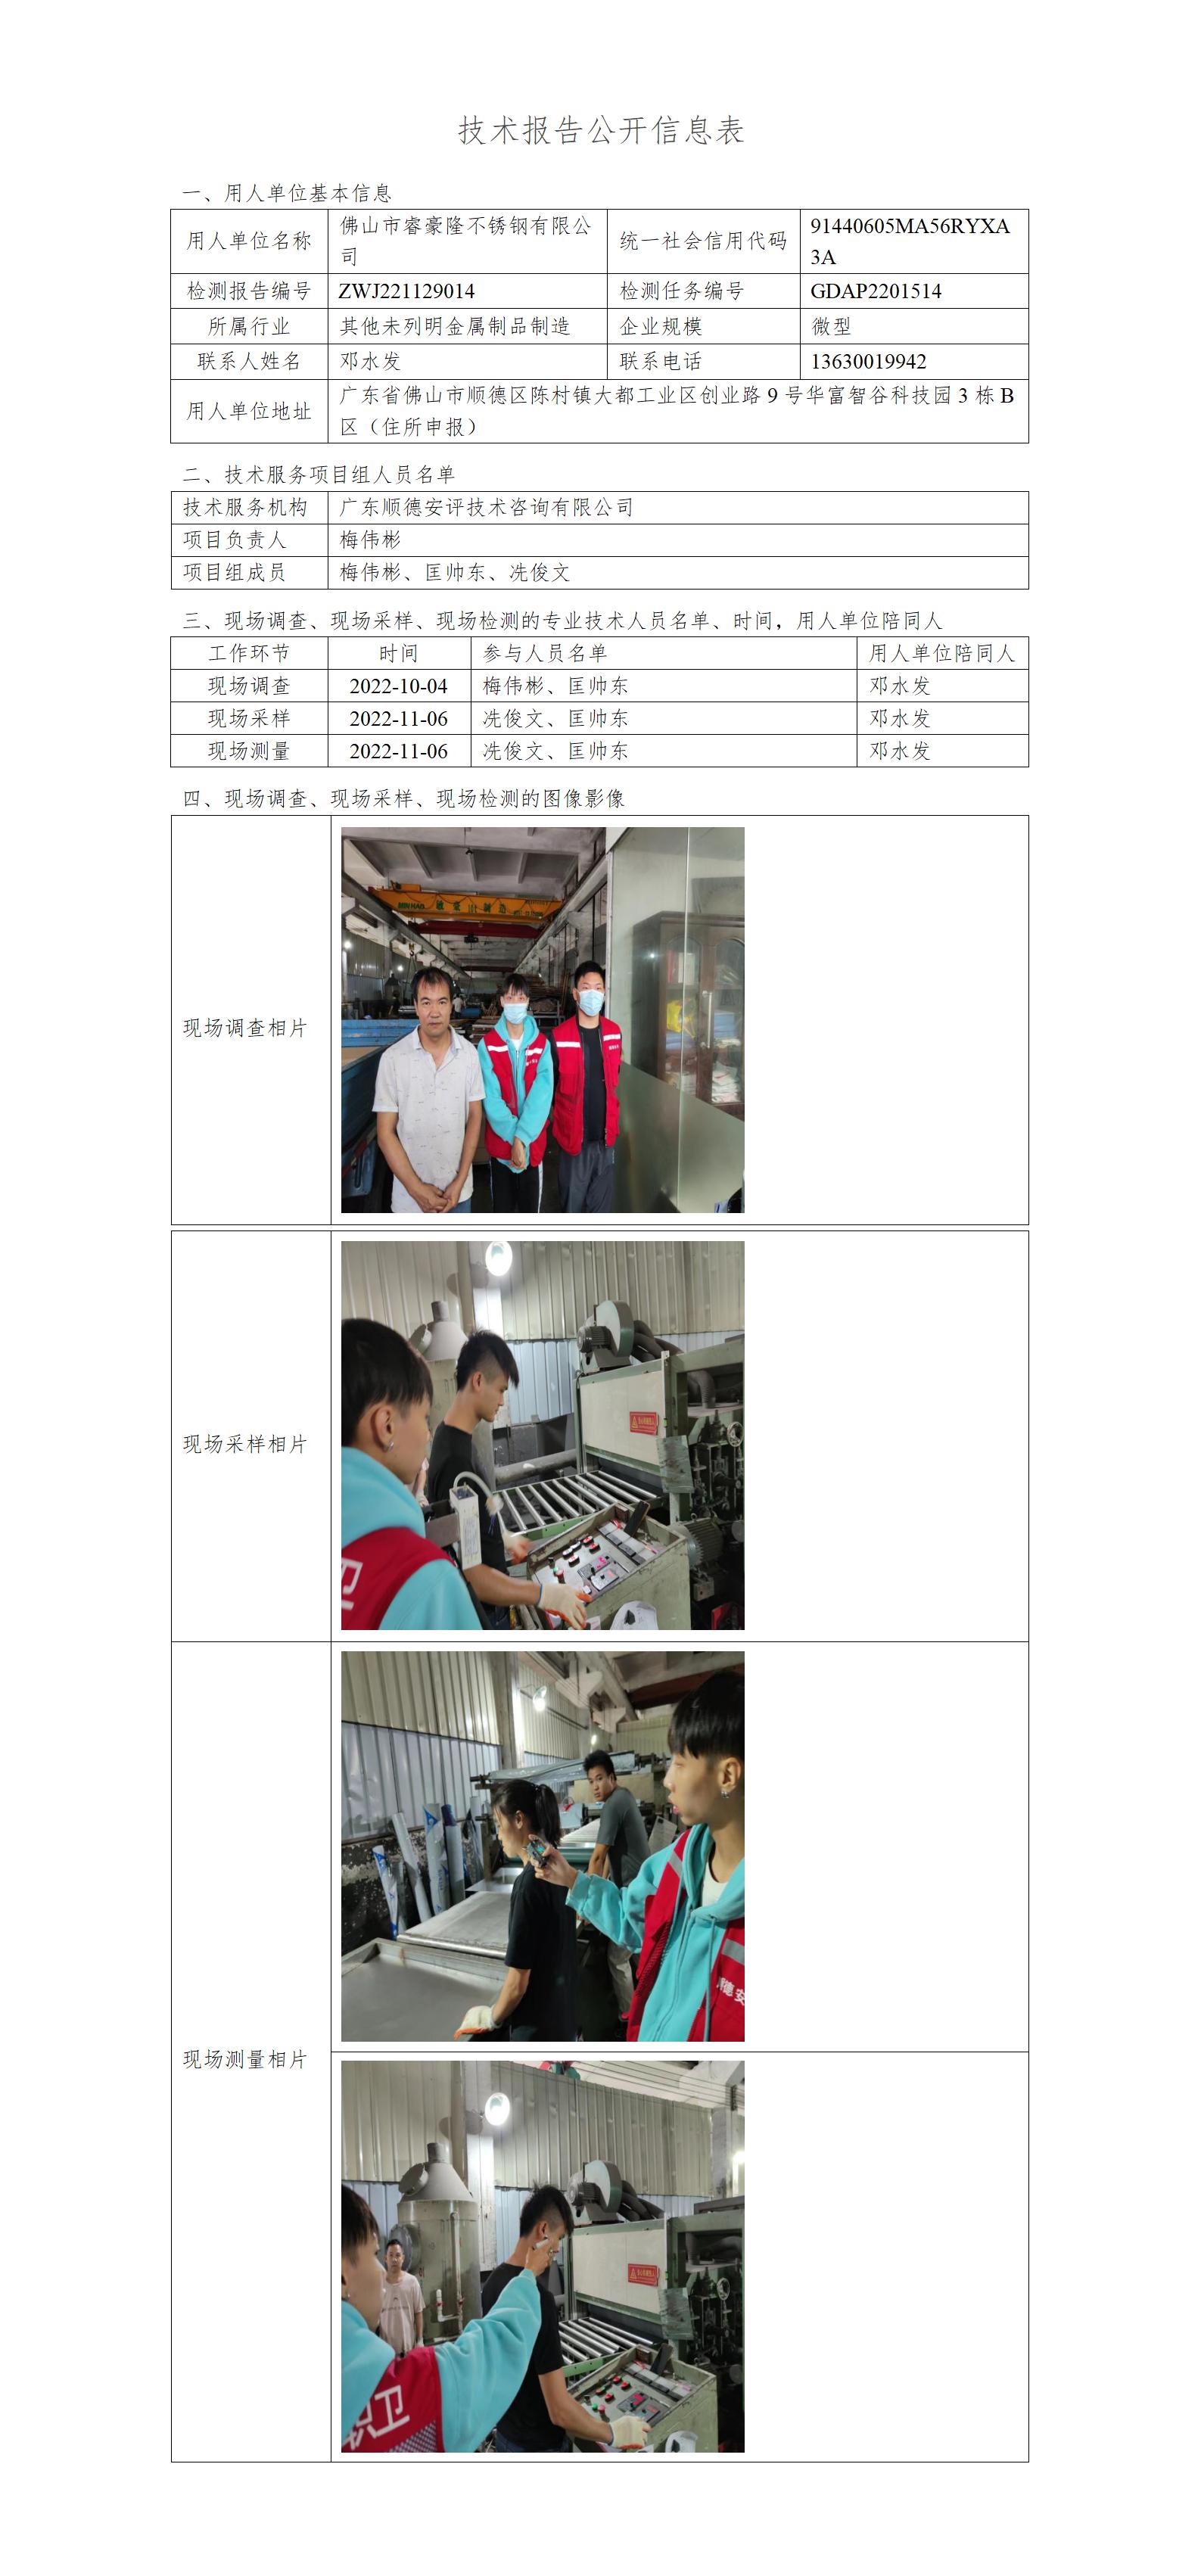 佛山市睿豪隆不锈钢有限公司-2022-技术报告公开信息表_01.jpg